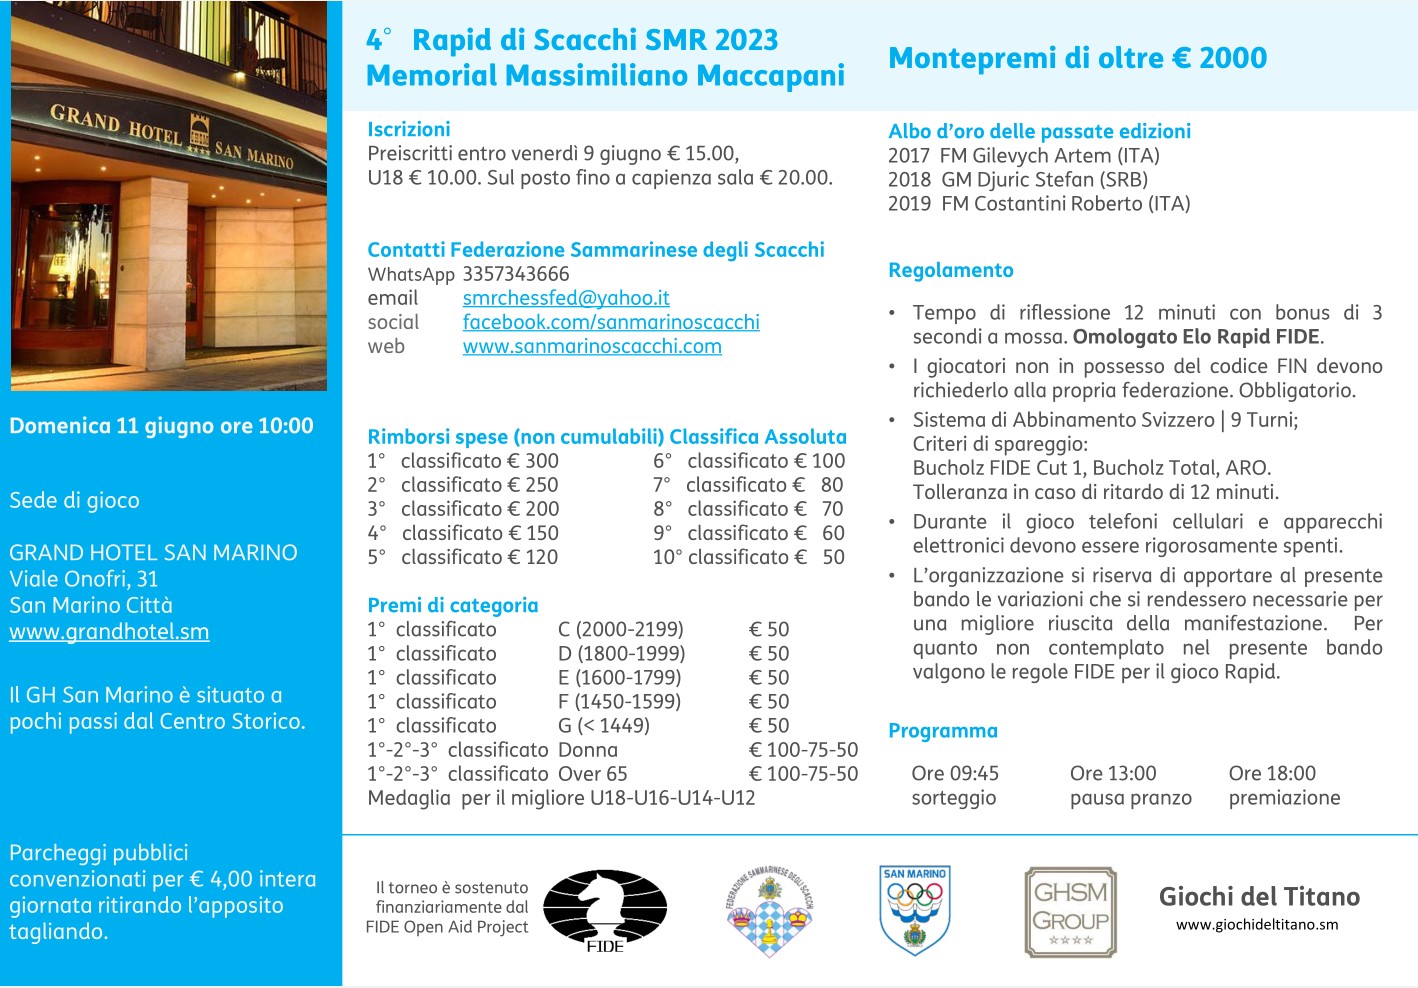 Torneo Rapid SMR 2023 - 4° memorial Massimiliano Maccapani